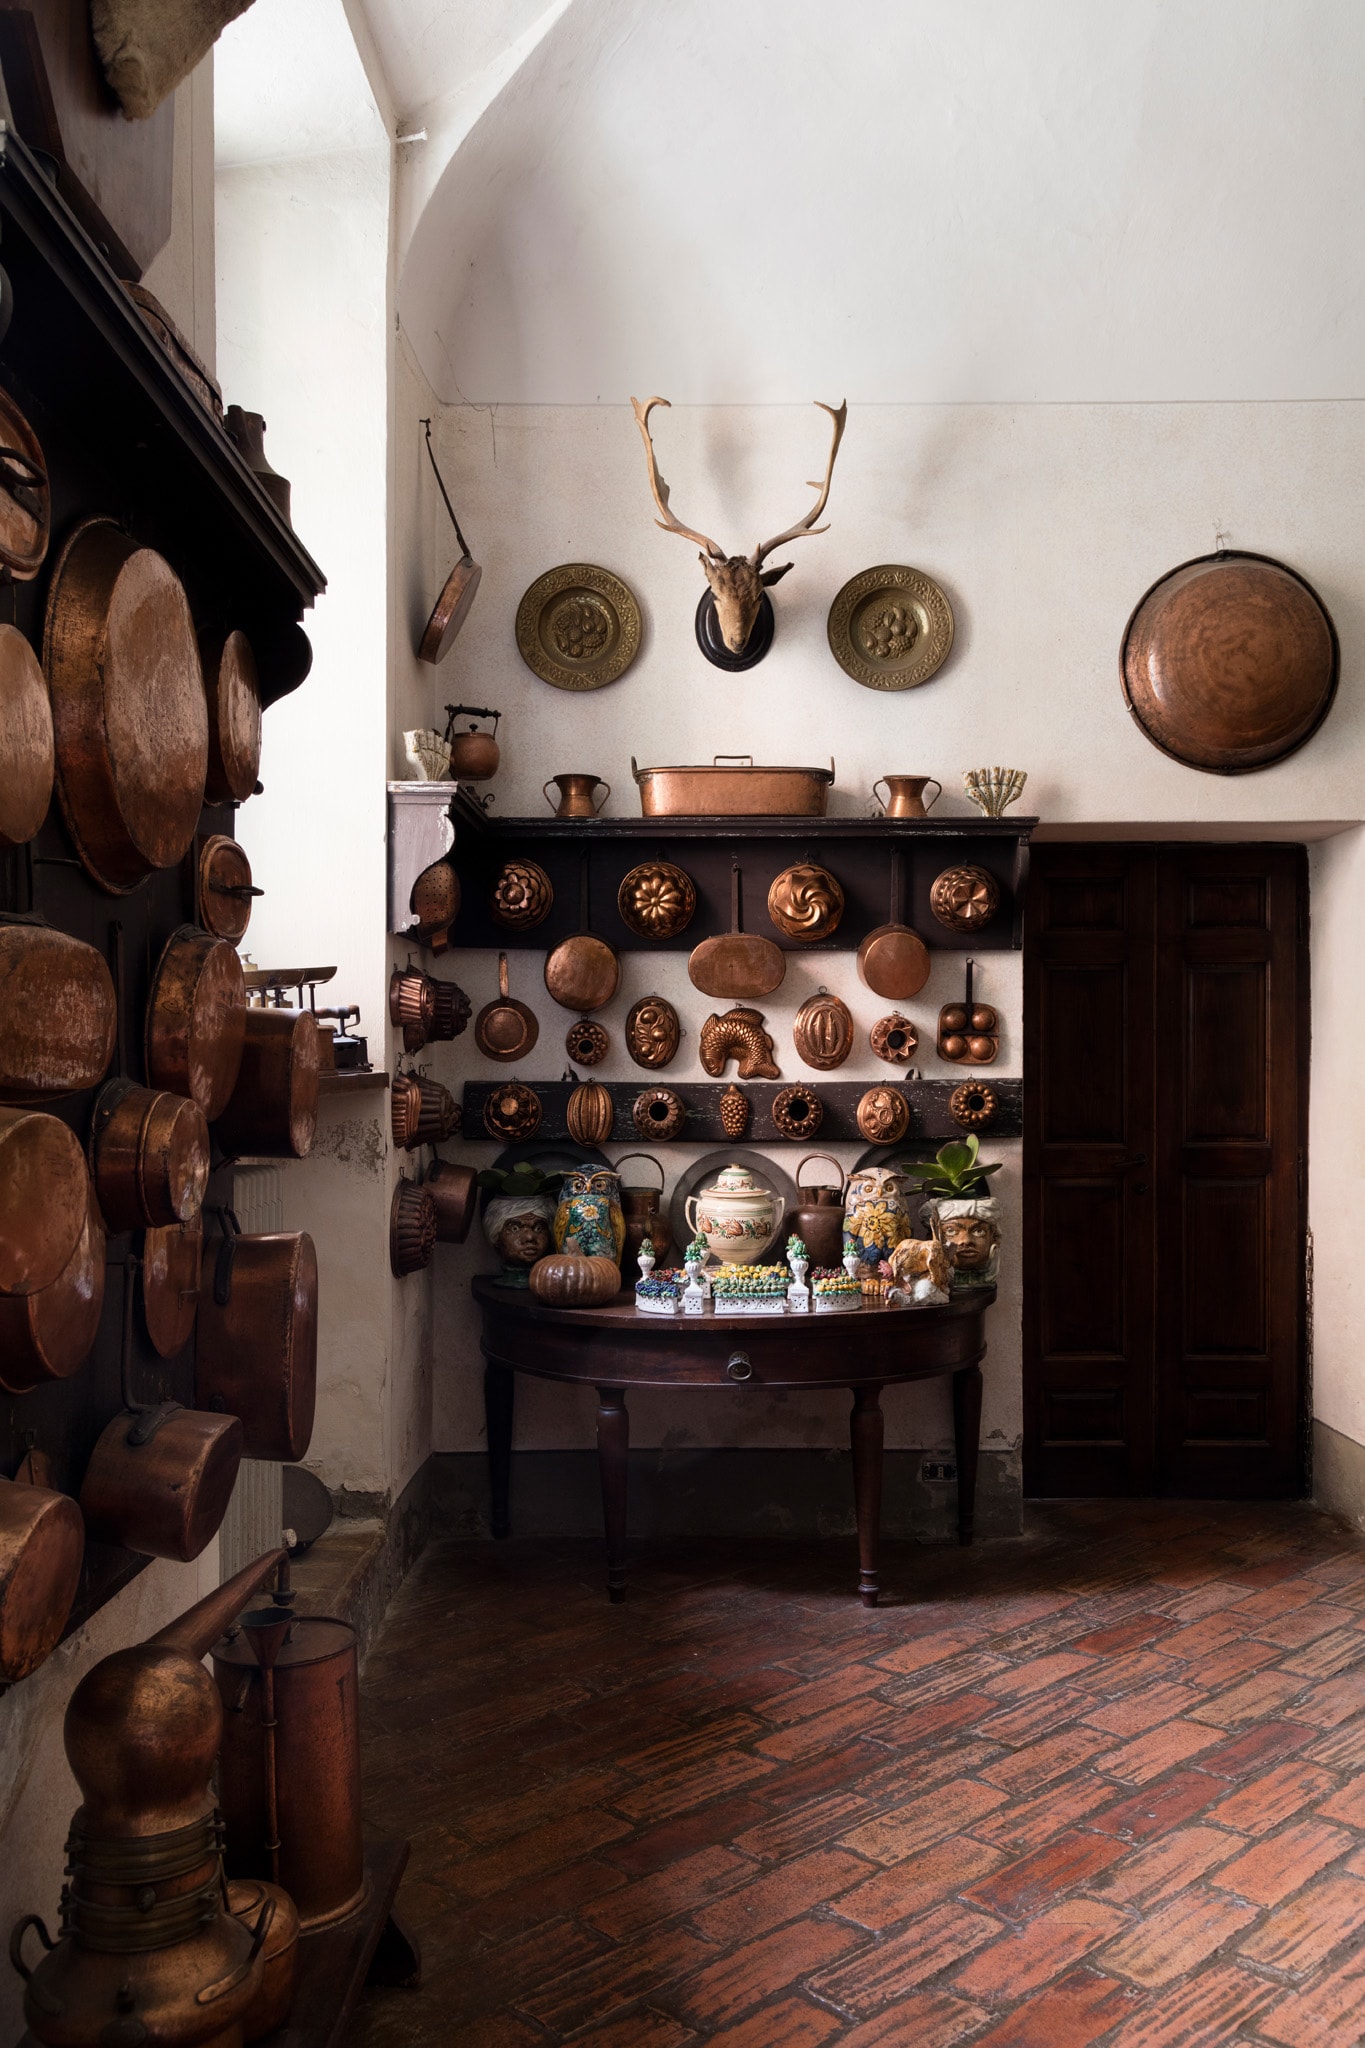 Le cucine del Castello di Rivalta, con le collezioni di pentole in rame da sempre appartenute alla famiglia.